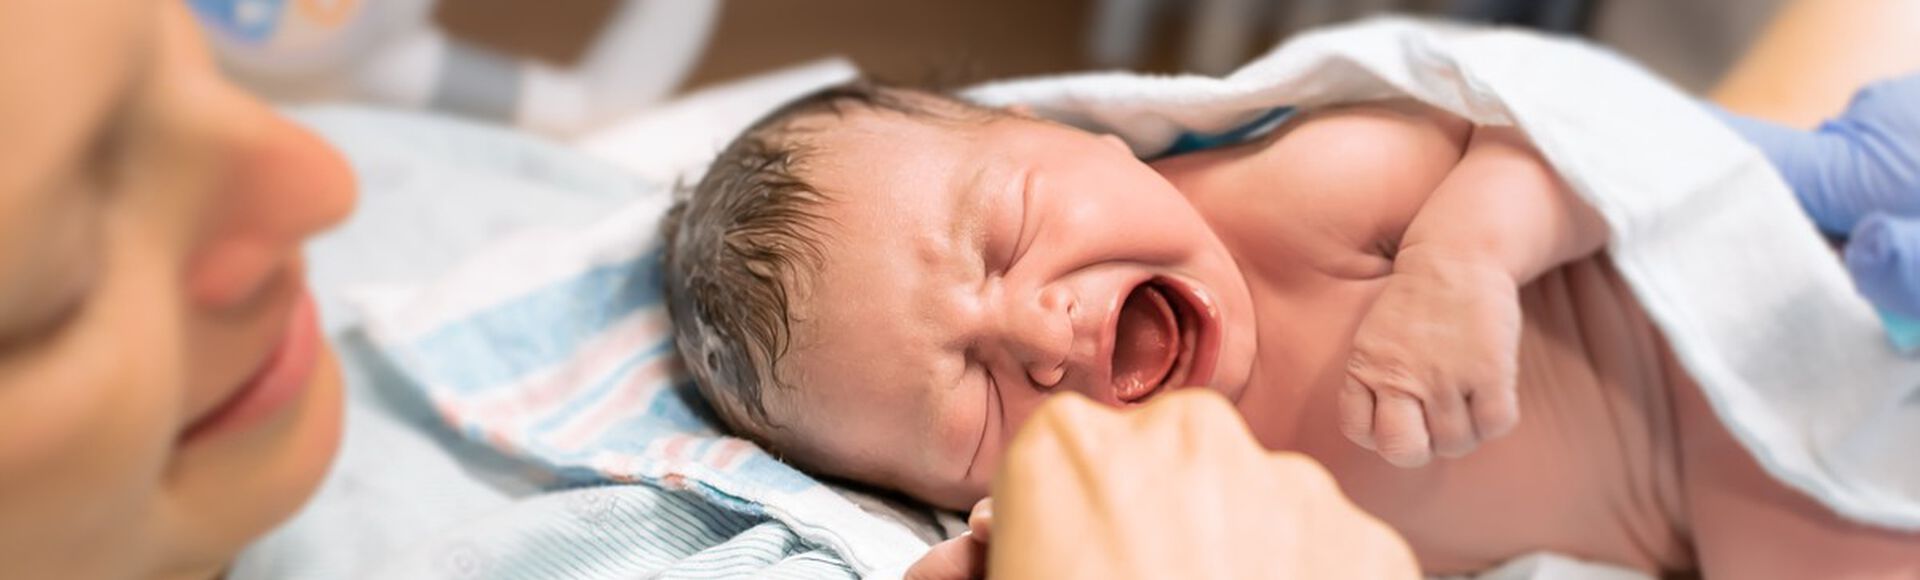 Mulher branca logo após parto com bebê recém-nascido nos braços